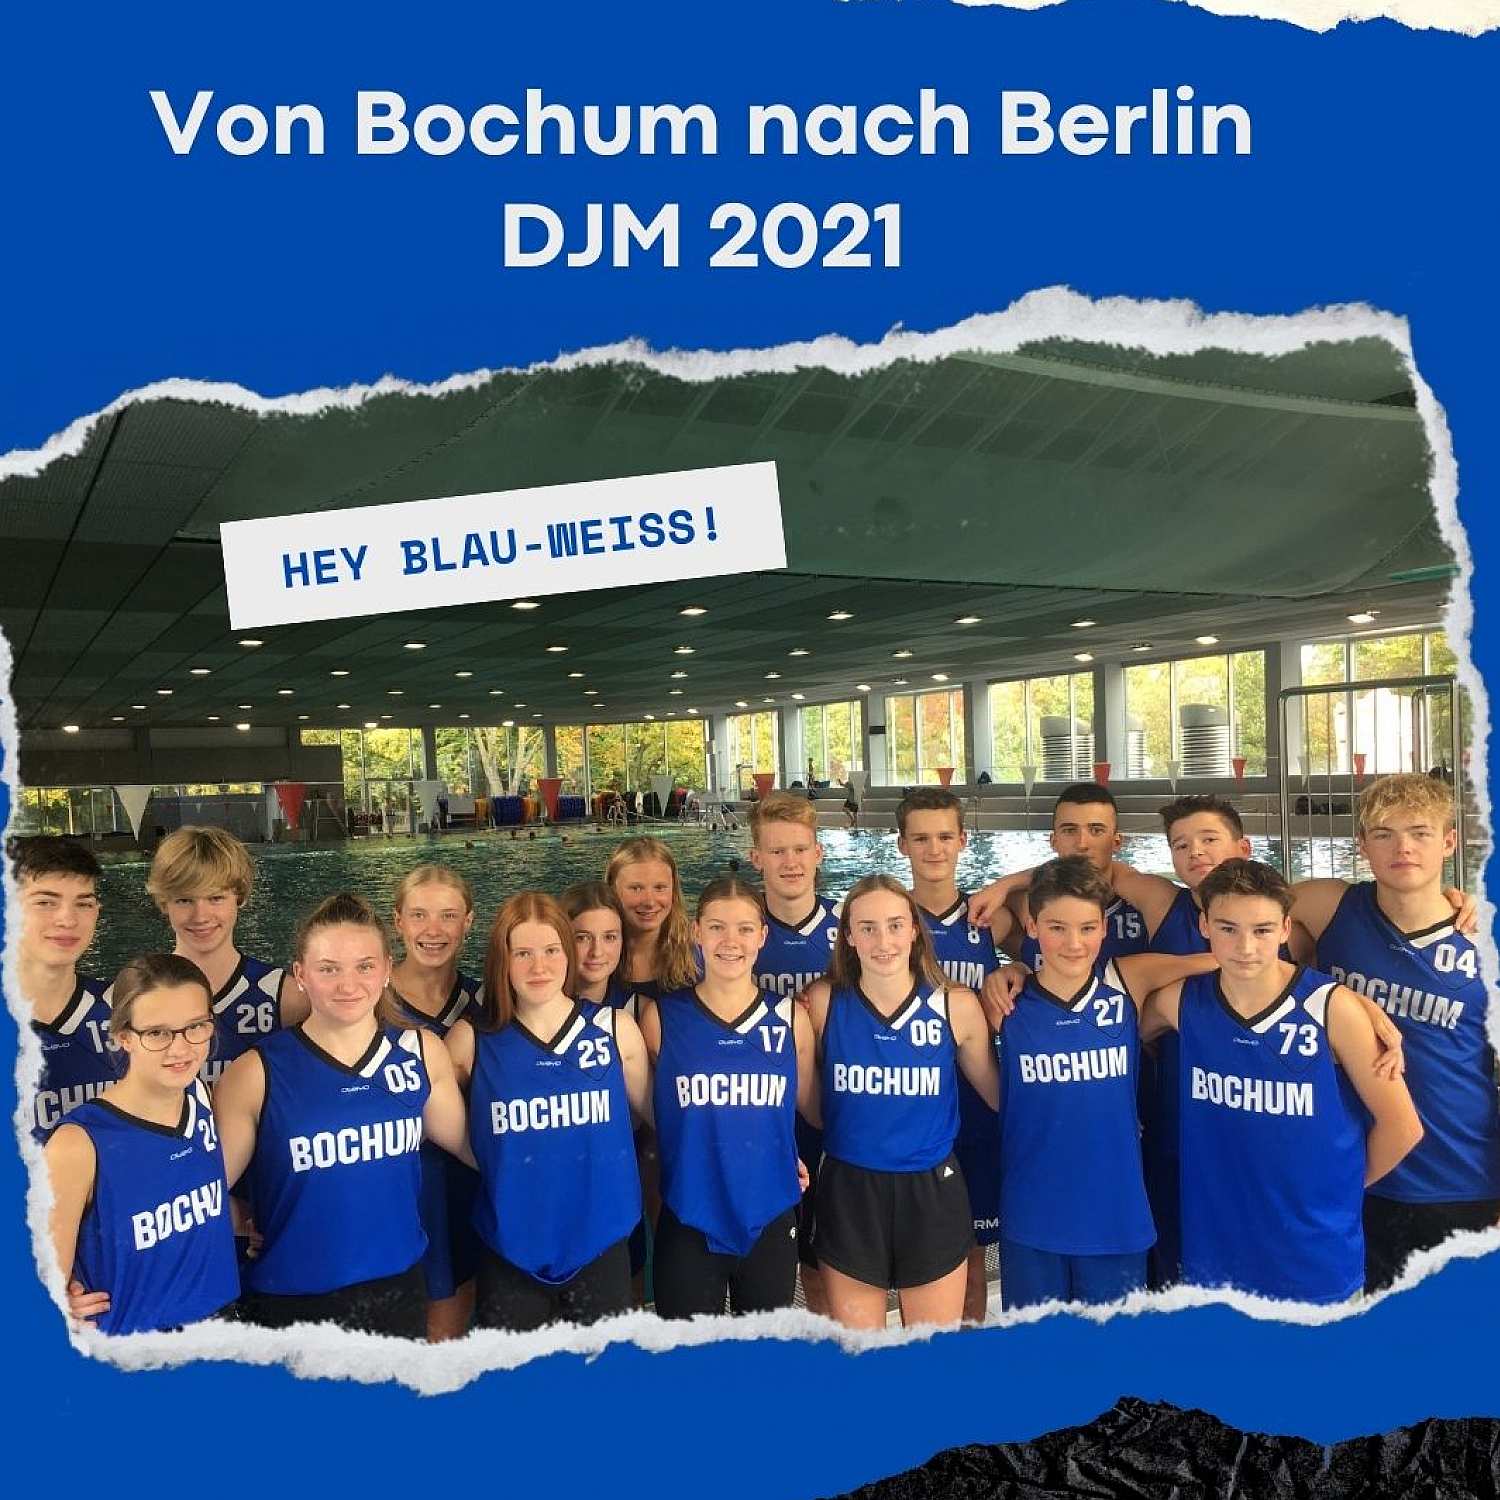 _bwbochum/medien/Schwimmen/Schwimmen_Fotos-2021/DJM21-von-Bochum-nach-Berlin.jpg